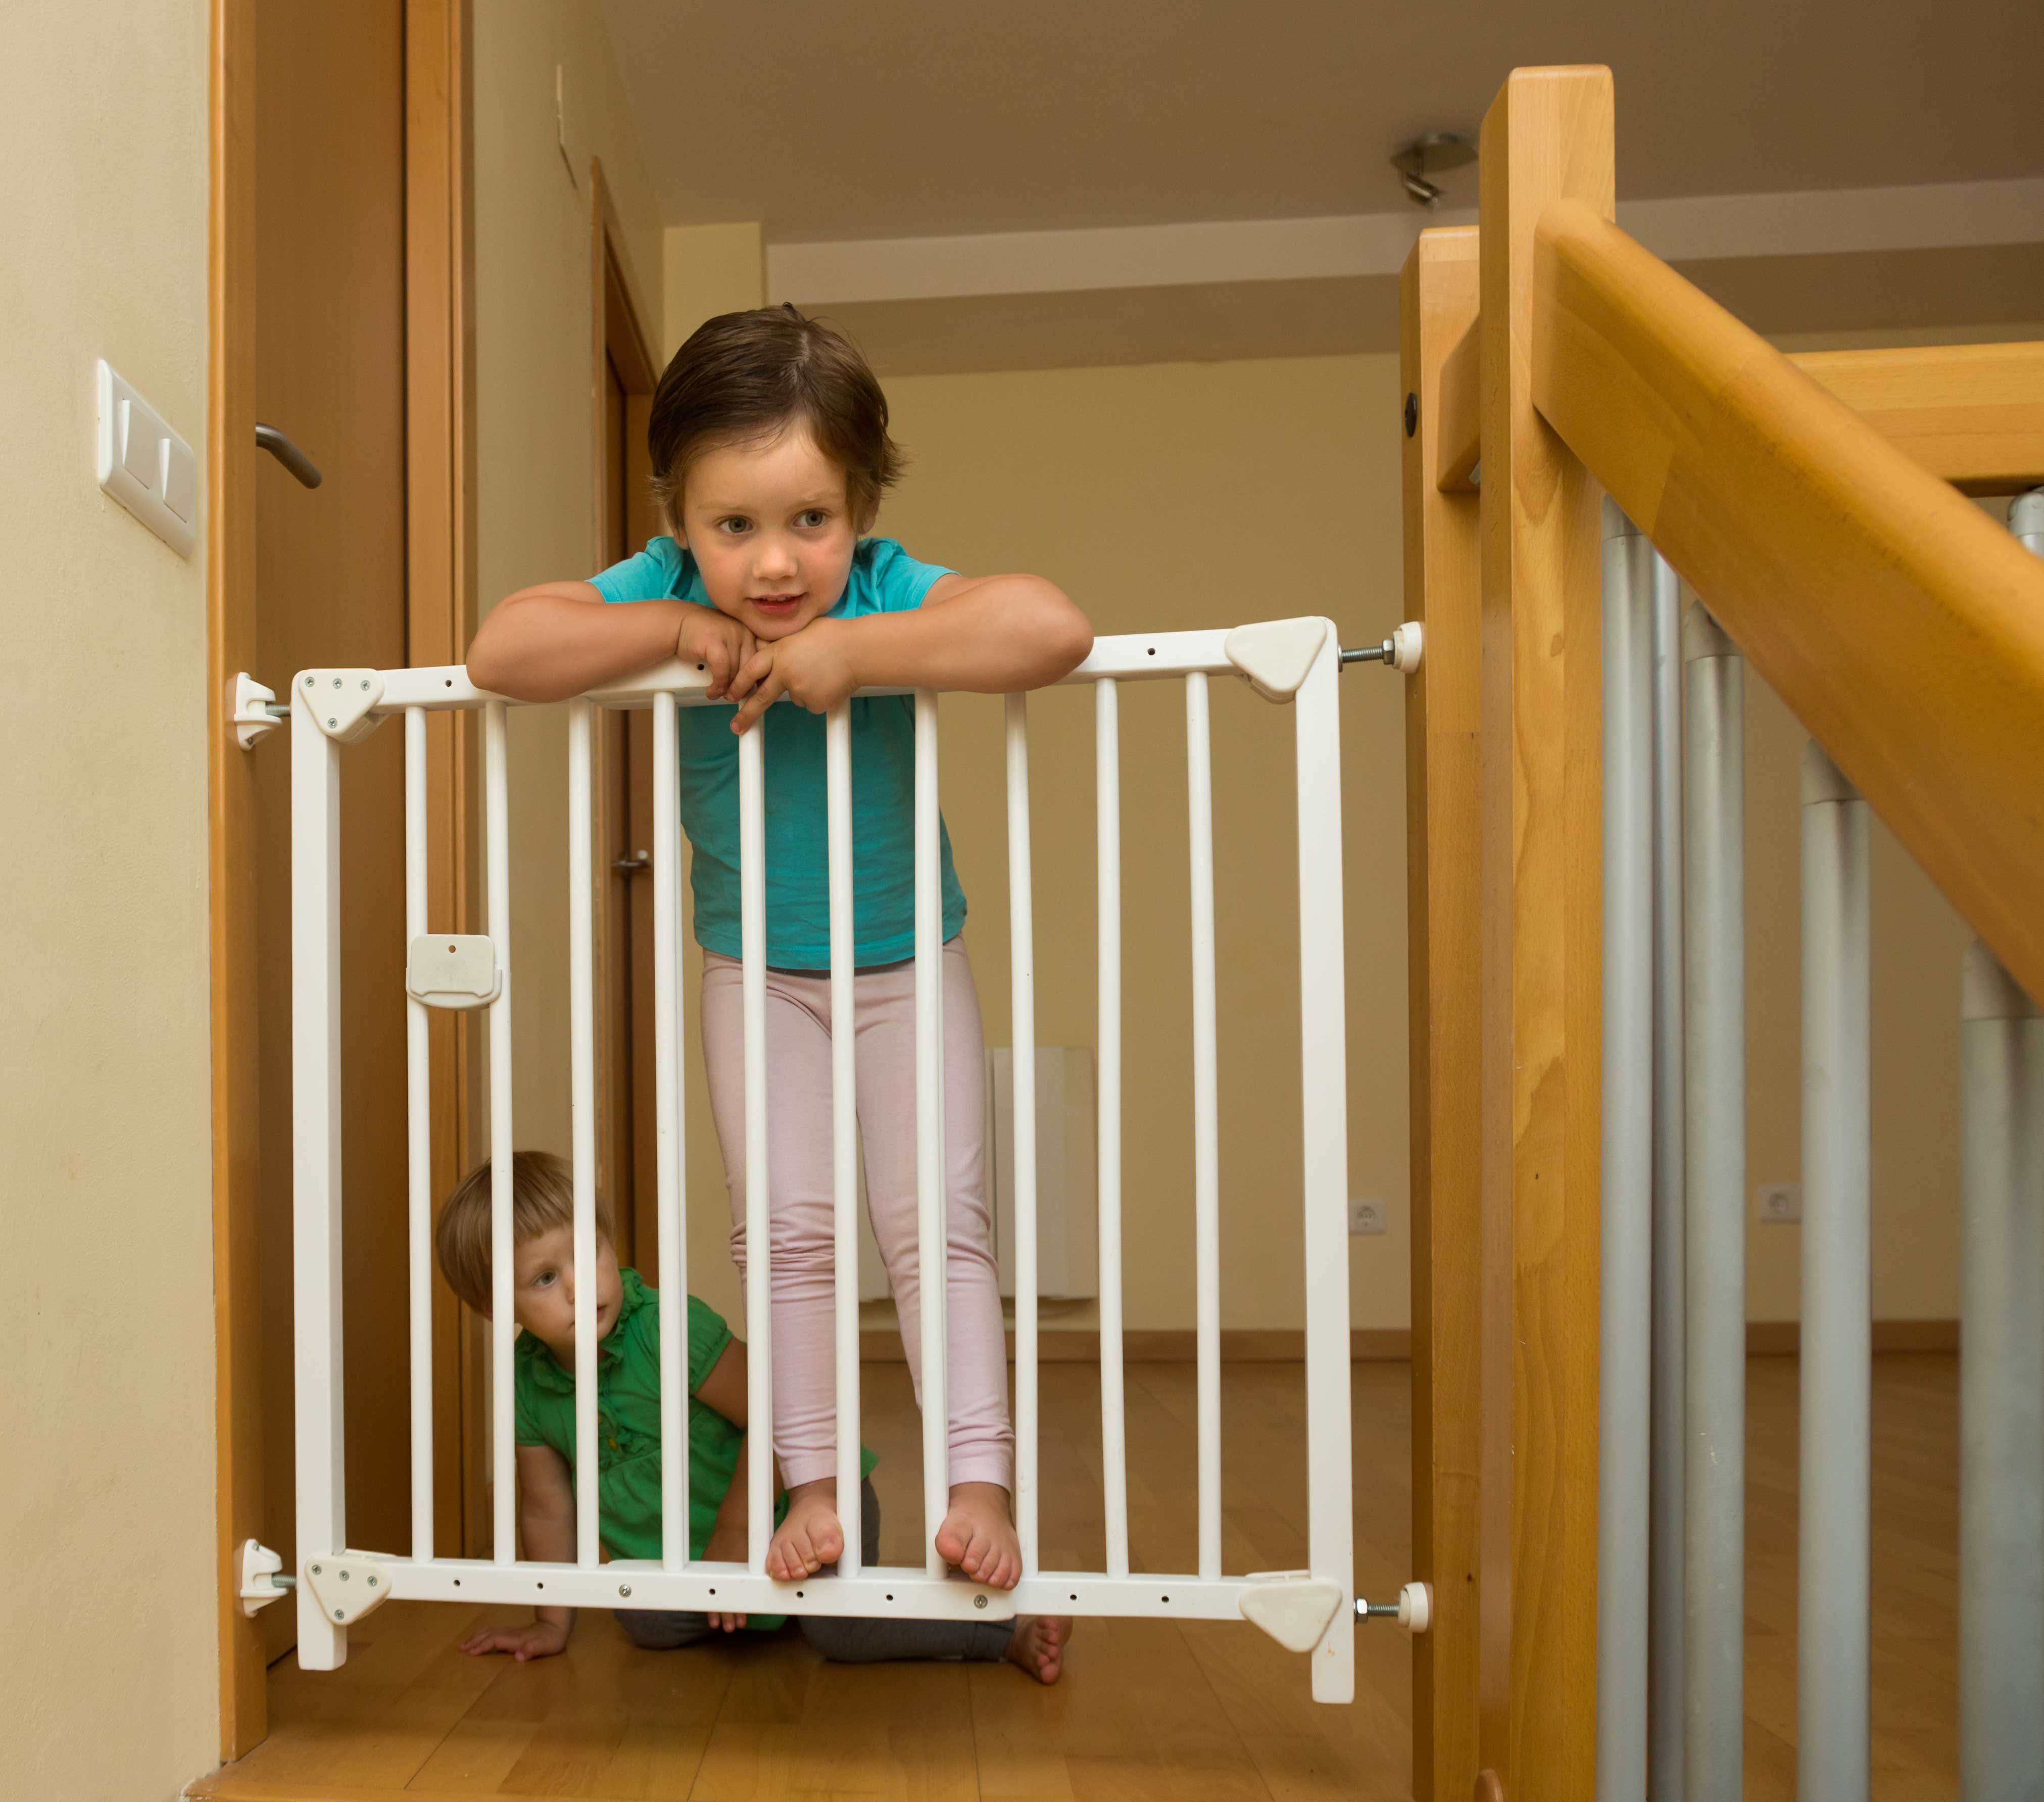 ▷ Sistemas de seguridad infantil 2018: tu casa, ¿es segura para tus hijos?